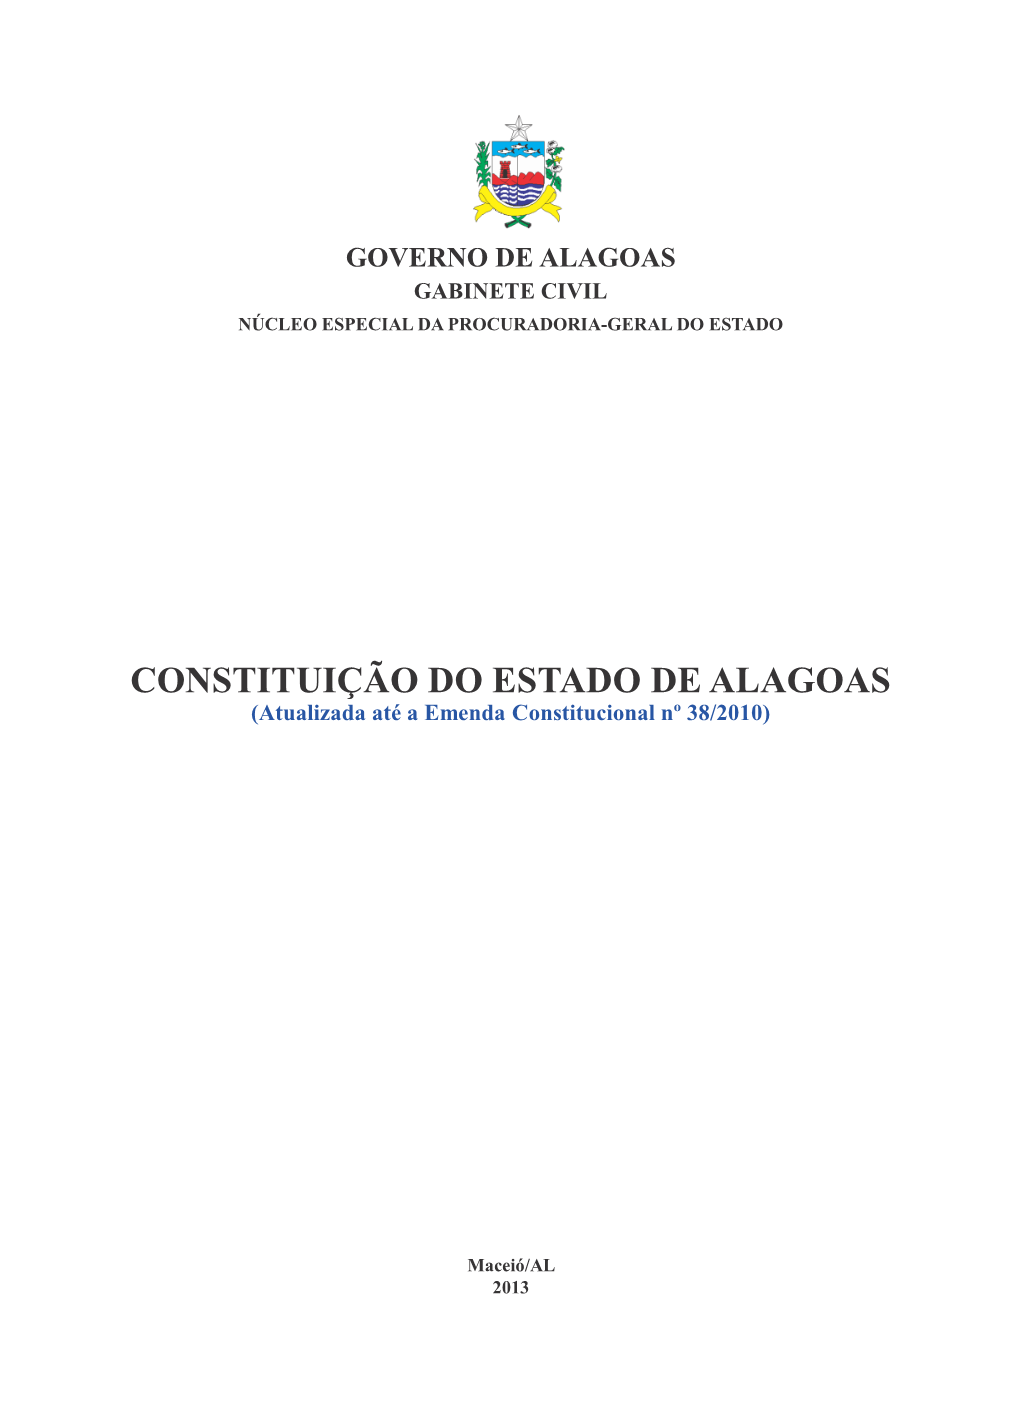 CONSTITUIÇÃO DO ESTADO DE ALAGOAS (Atualizada Até a Emenda Constitucional Nº 38/2010)